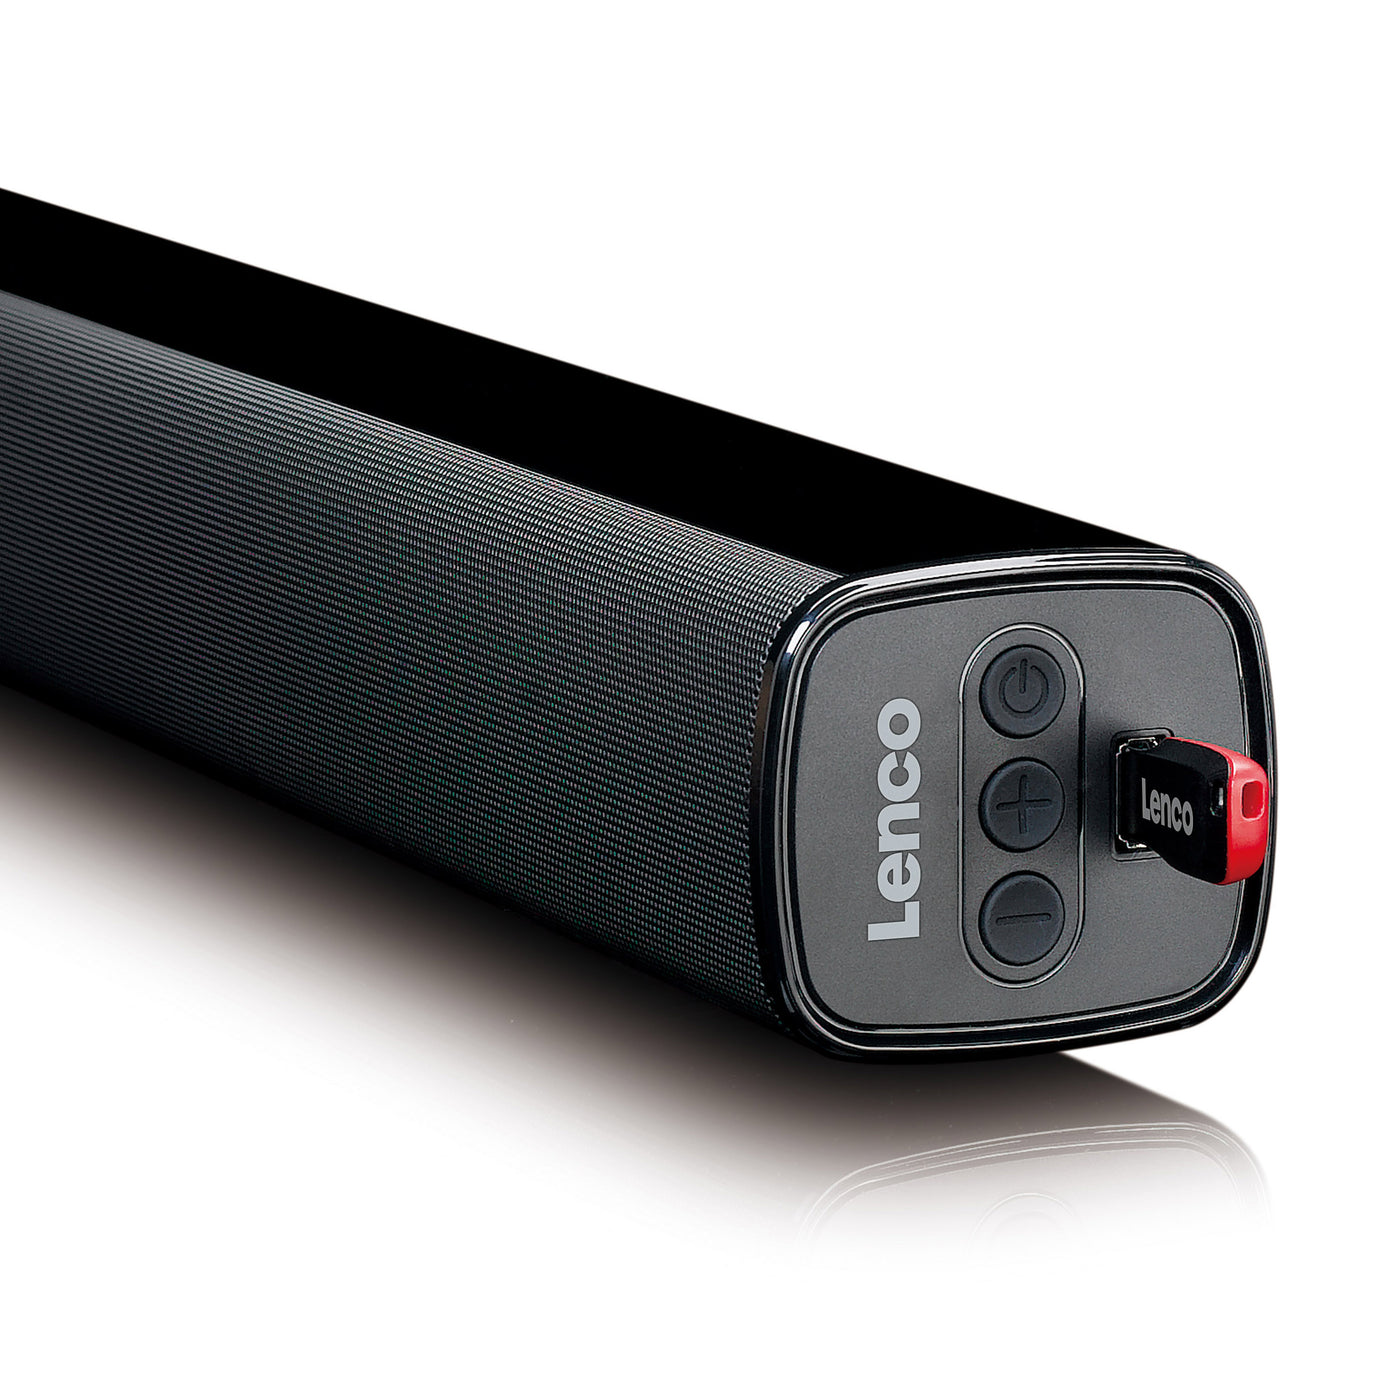 Lenco SB-080 - 90 cm Soundbar mit Bluetooth® - 80 Watt RMS - Eingebauter Subwoofer - USB-Eingang- HDMI (ARC) - Optischer Eingang - Schwarz